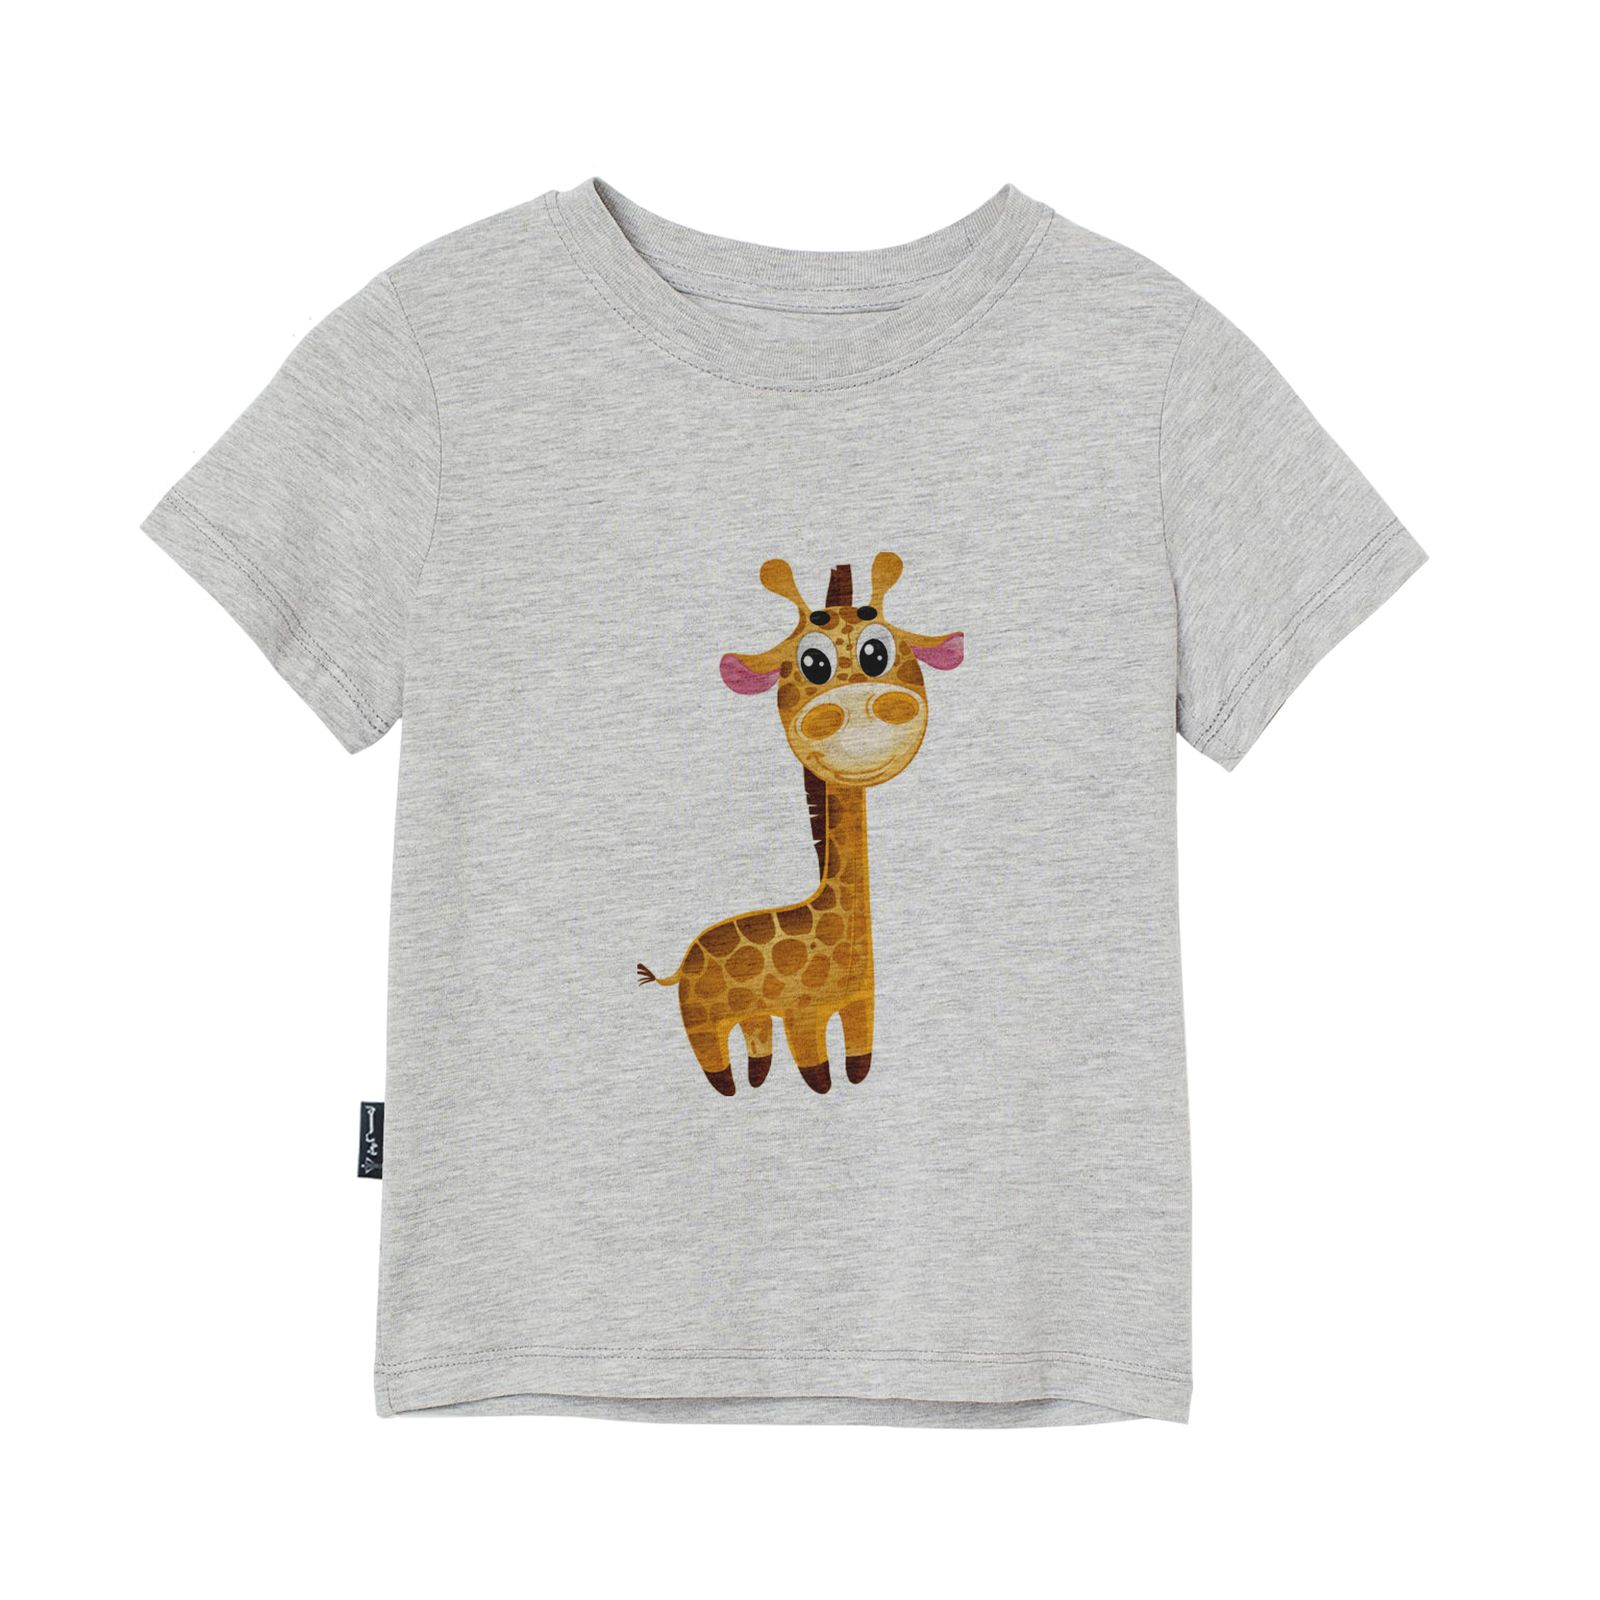 تی شرت آستین کوتاه پسرانه به رسم مدل زرافه کد 1109 -  - 1